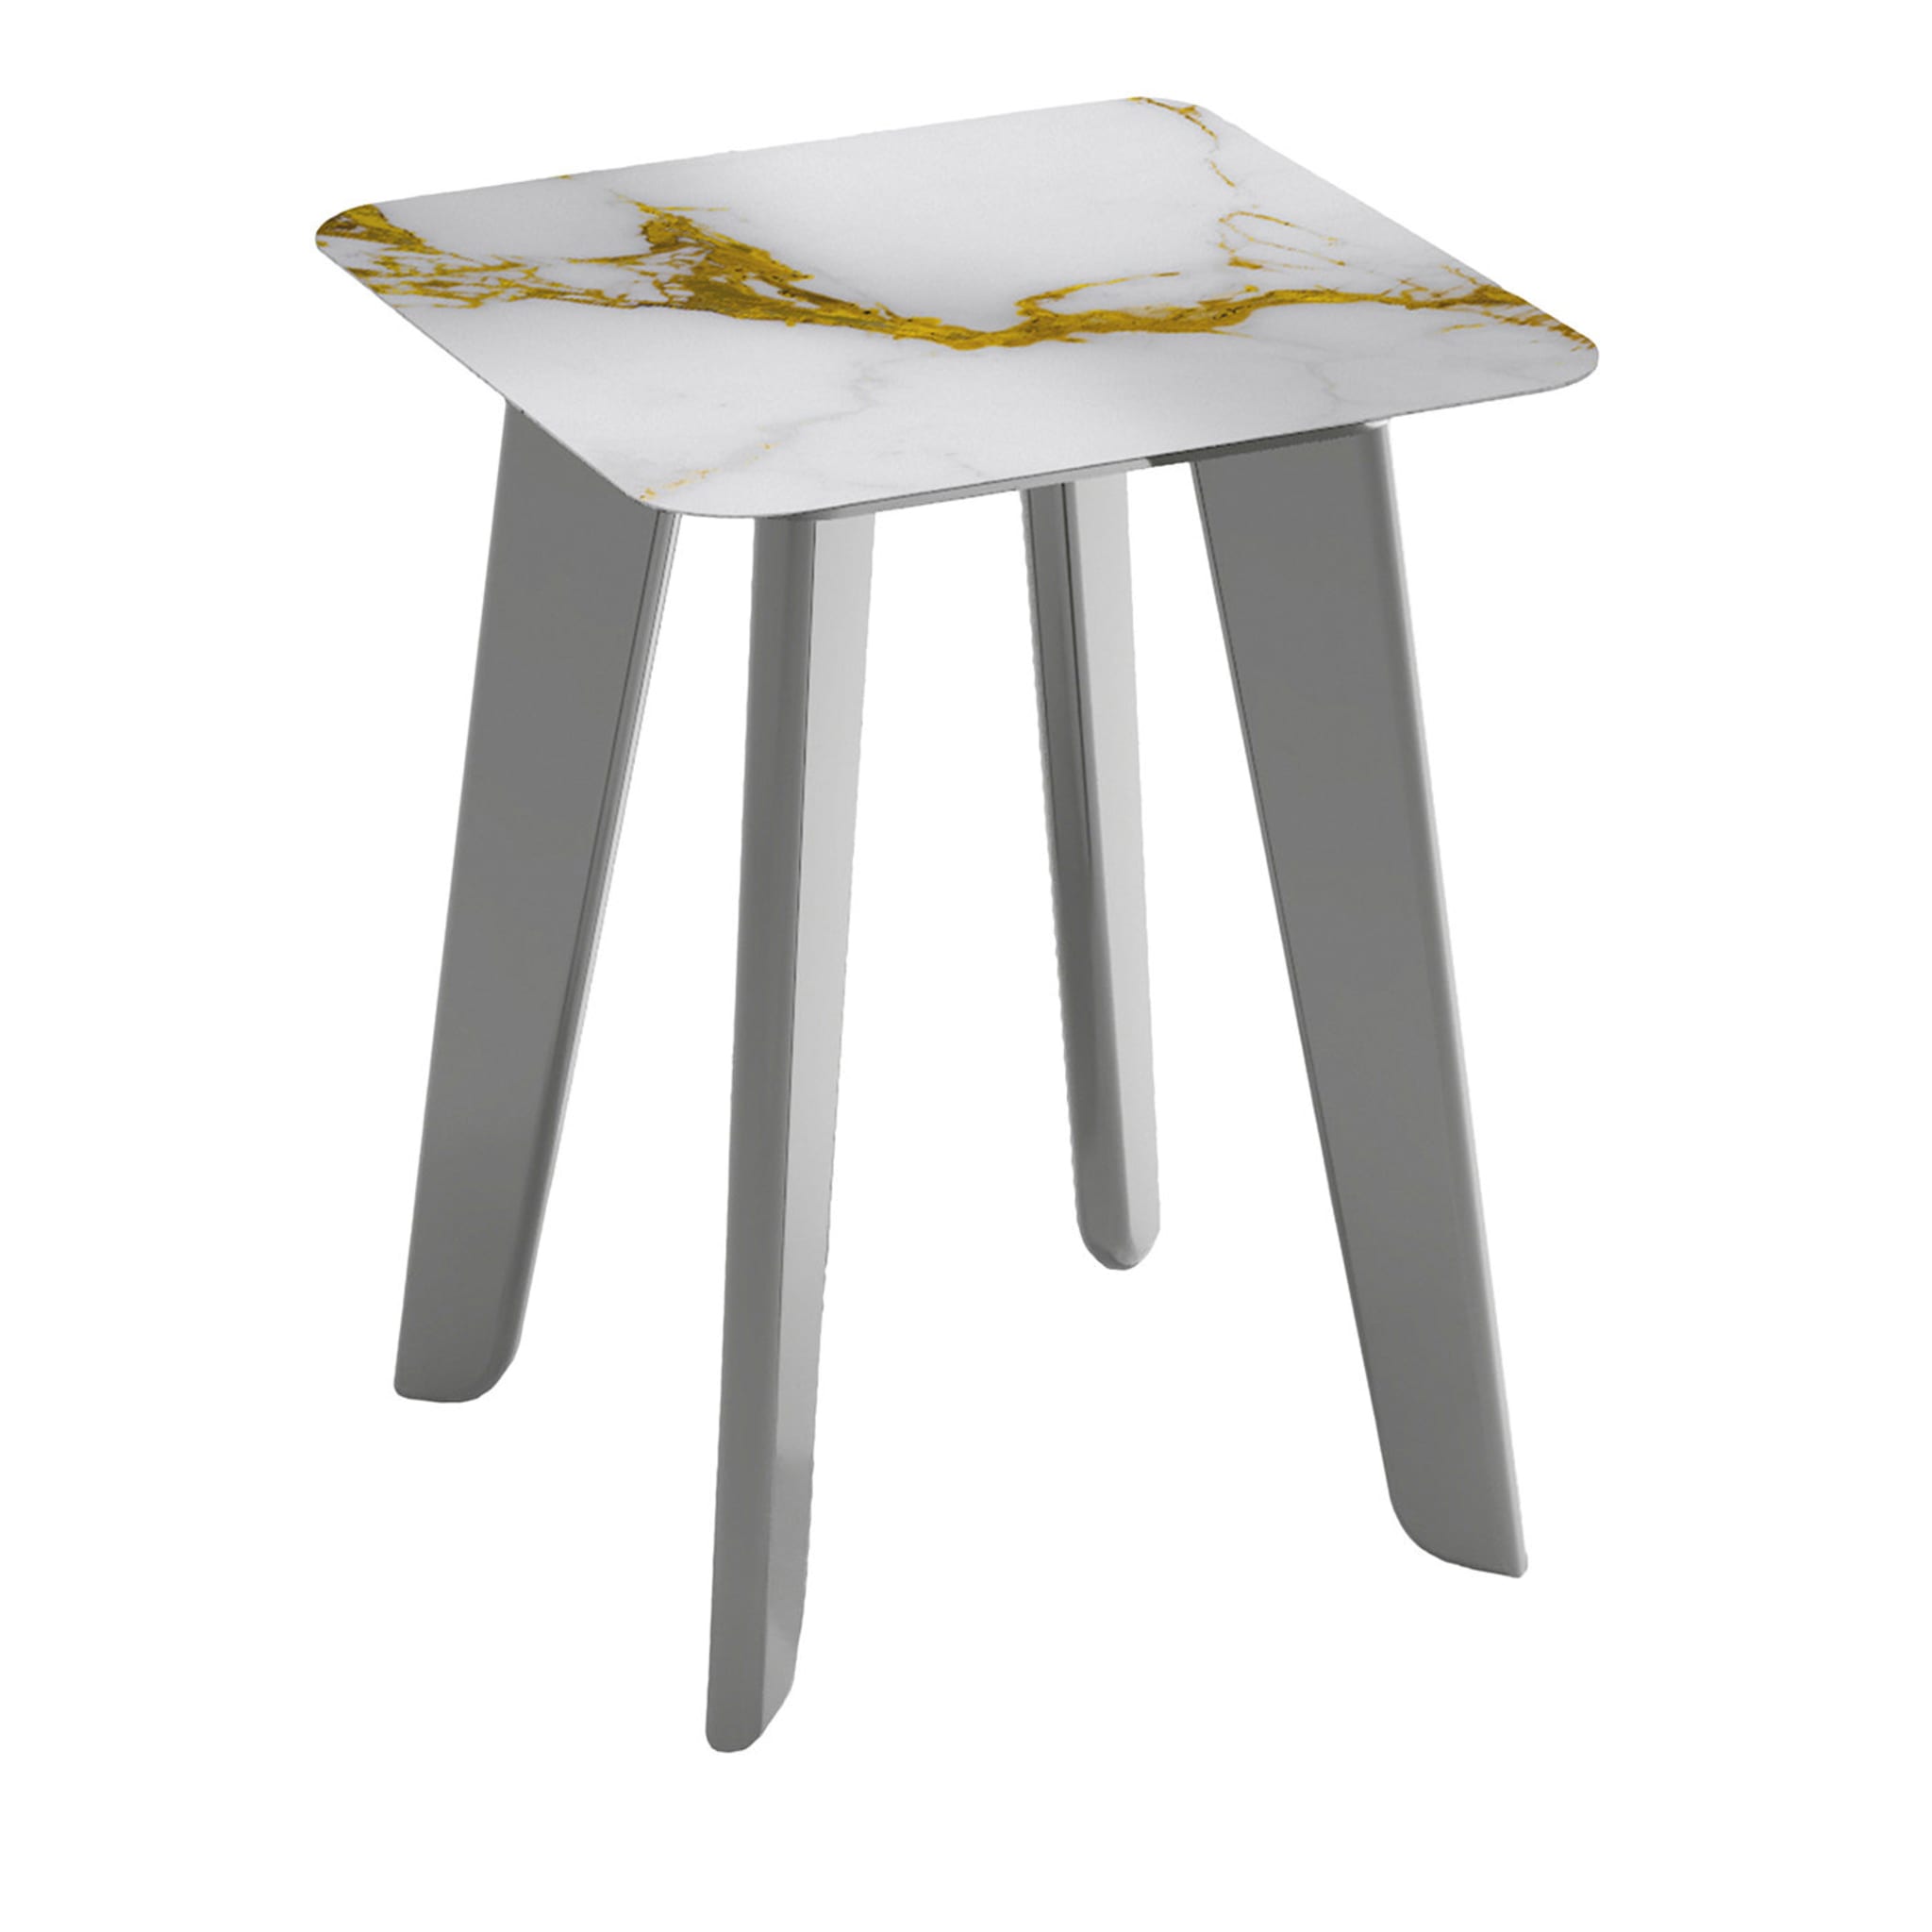 Owen Tall Square Side Table with Gold and White Top (Table d'appoint carrée haute avec plateau doré et blanc) - Vue principale